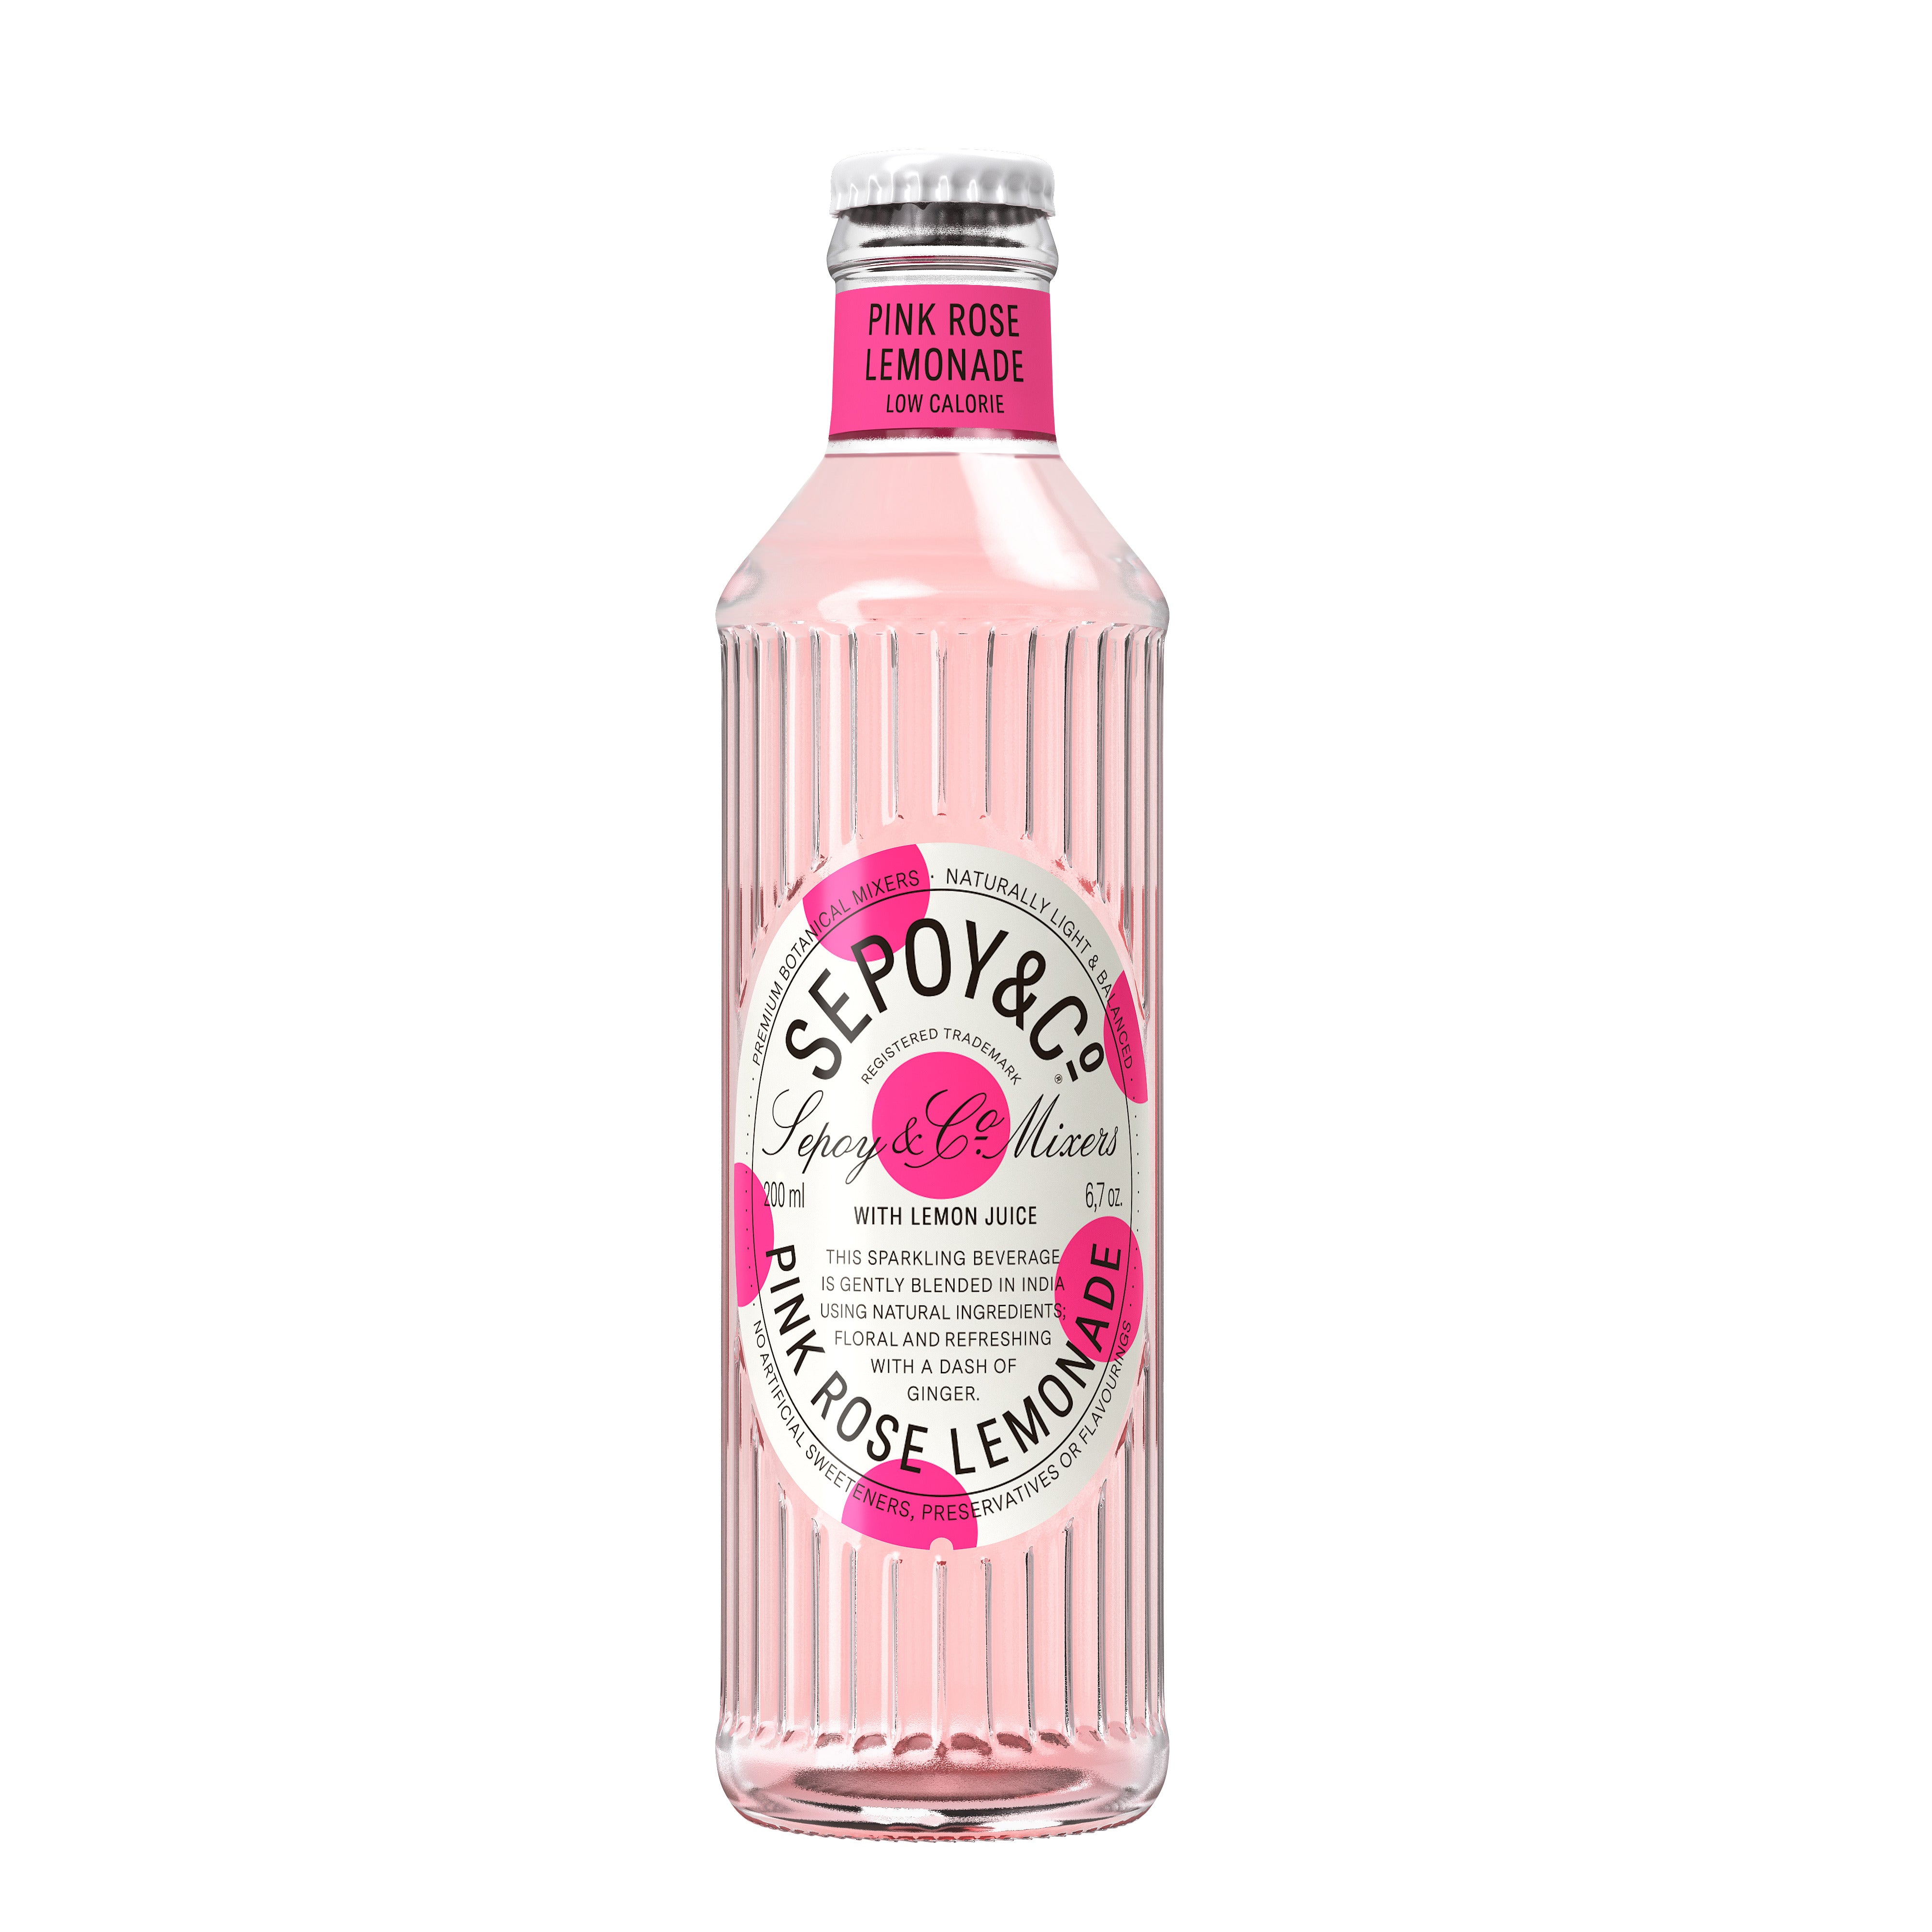 Вкус розовый лимонад. Розовый лимонад. Розовый газированный напиток.